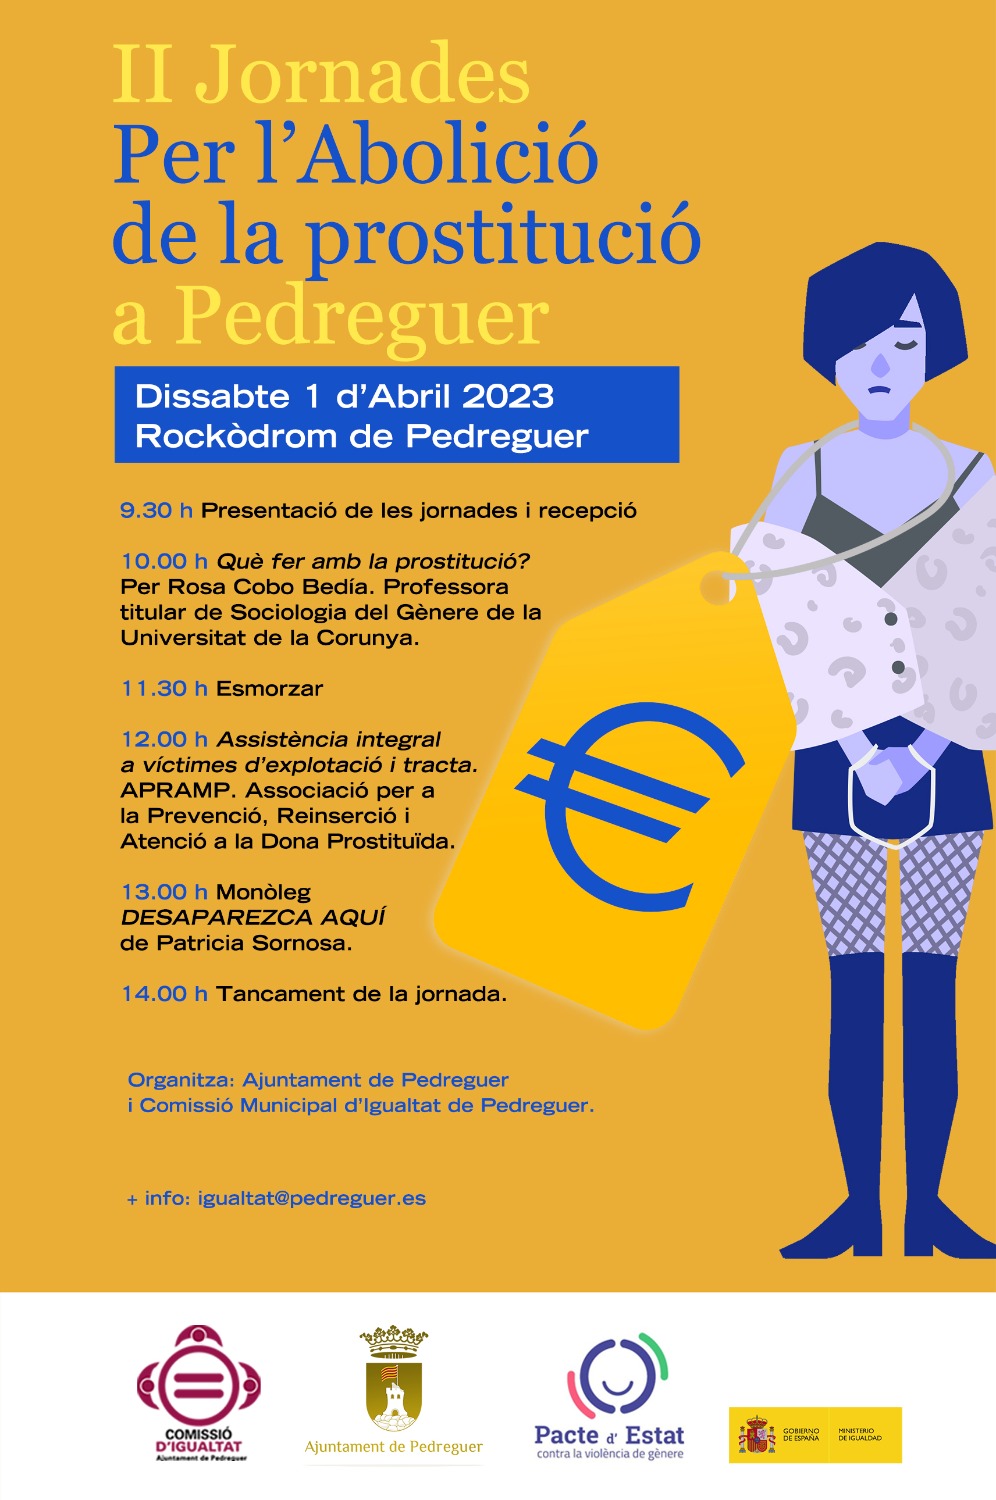 El día 1 de abril tendrán lugar las II Jornadas Por la Abolición de la prostitución en Pedreguer.